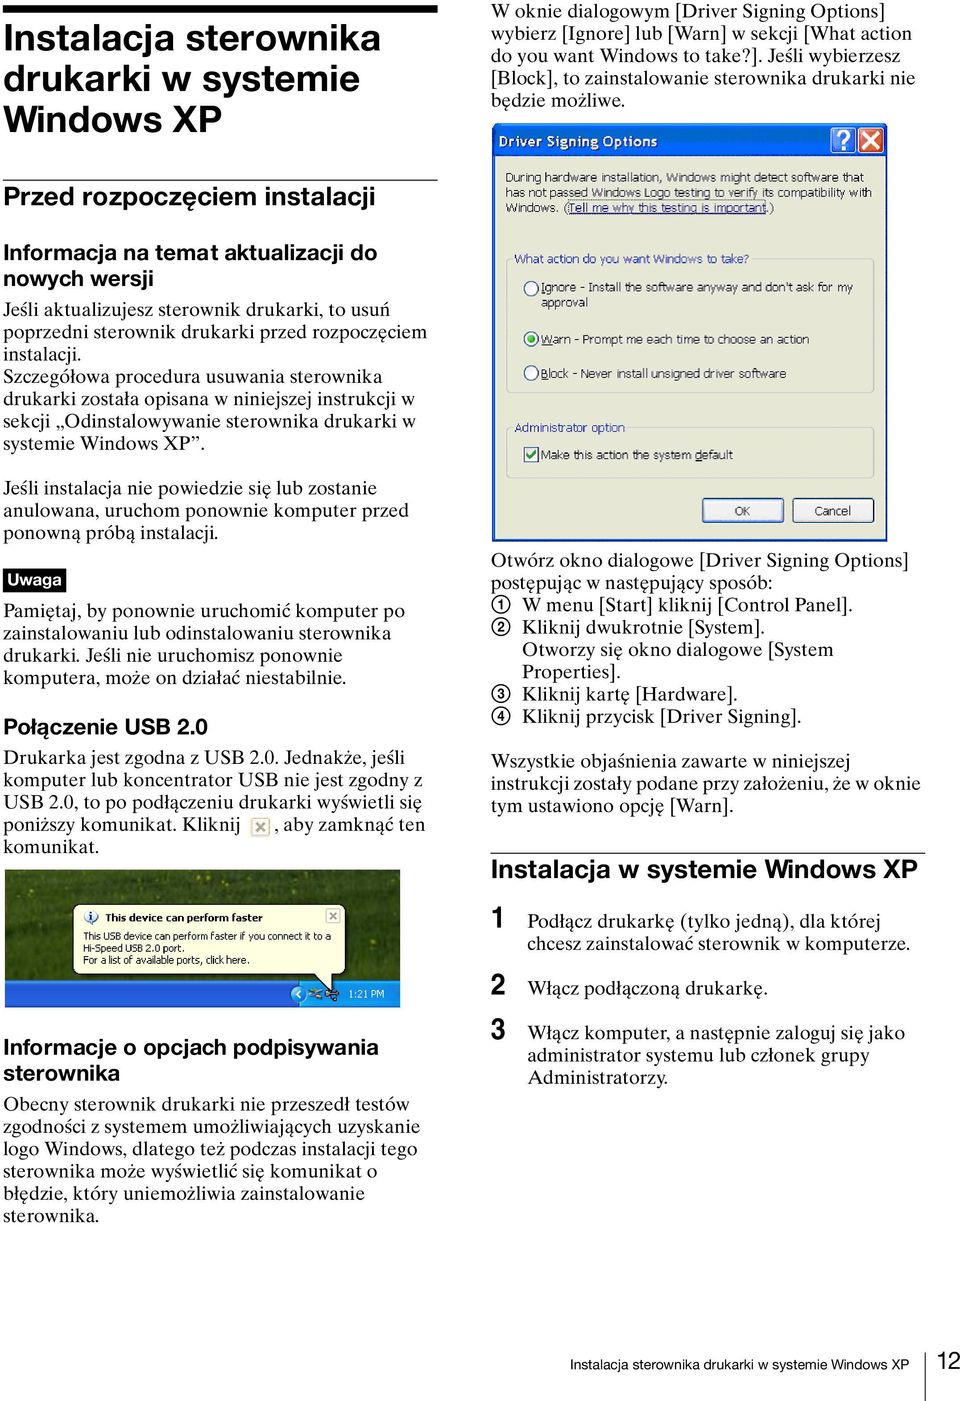 Szczegółowa procedura usuwania sterownika drukarki została opisana w niniejszej instrukcji w sekcji Odinstalowywanie sterownika drukarki w systemie Windows XP.